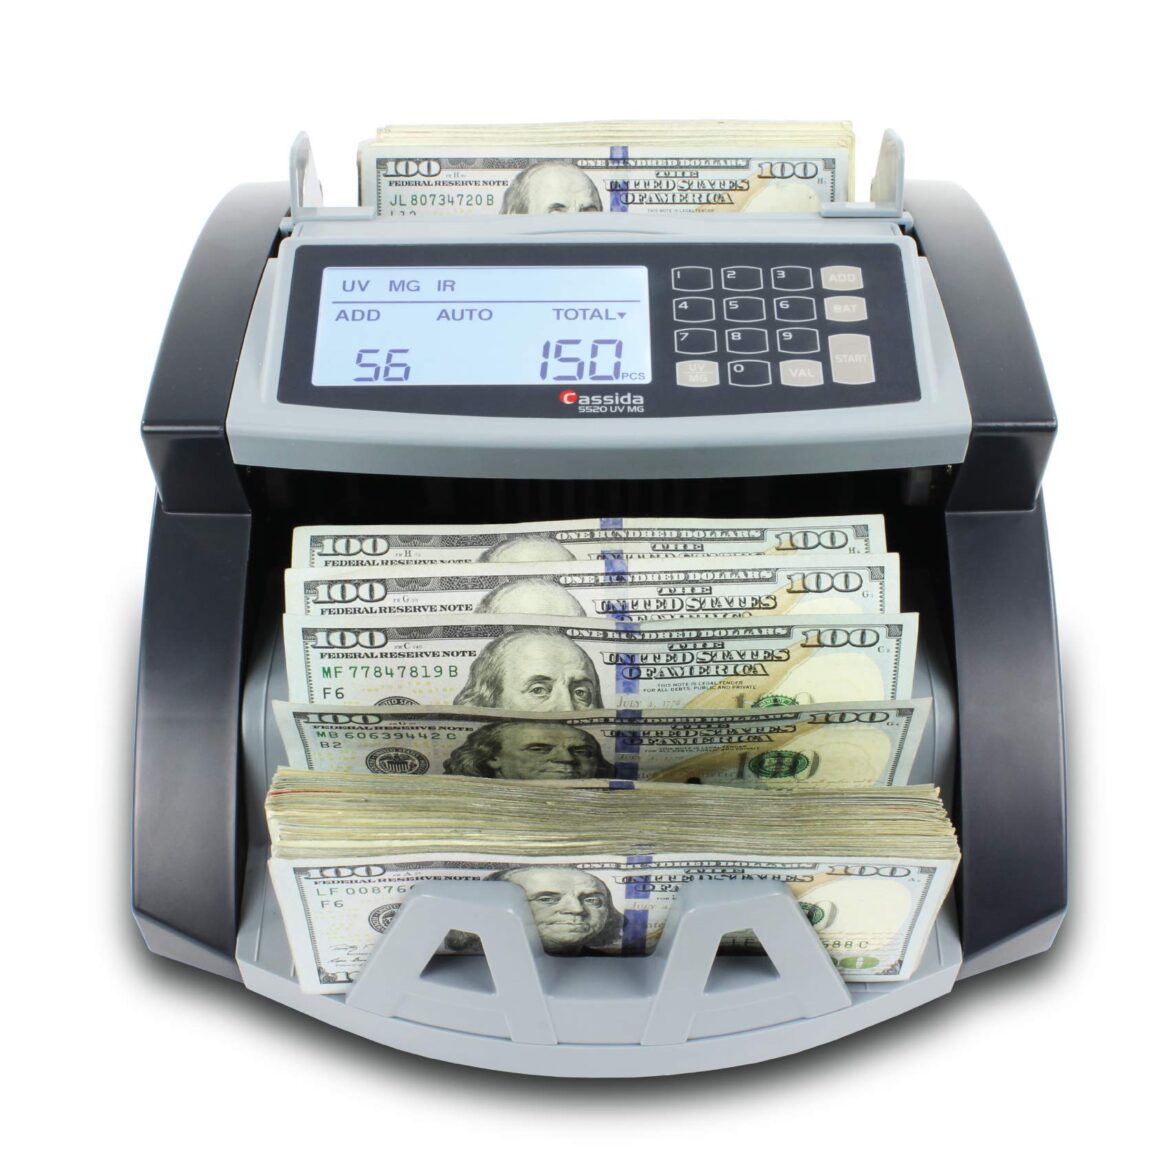 ماكينة عد النقدية: تسهيل وتسريع عمليات العد المالي